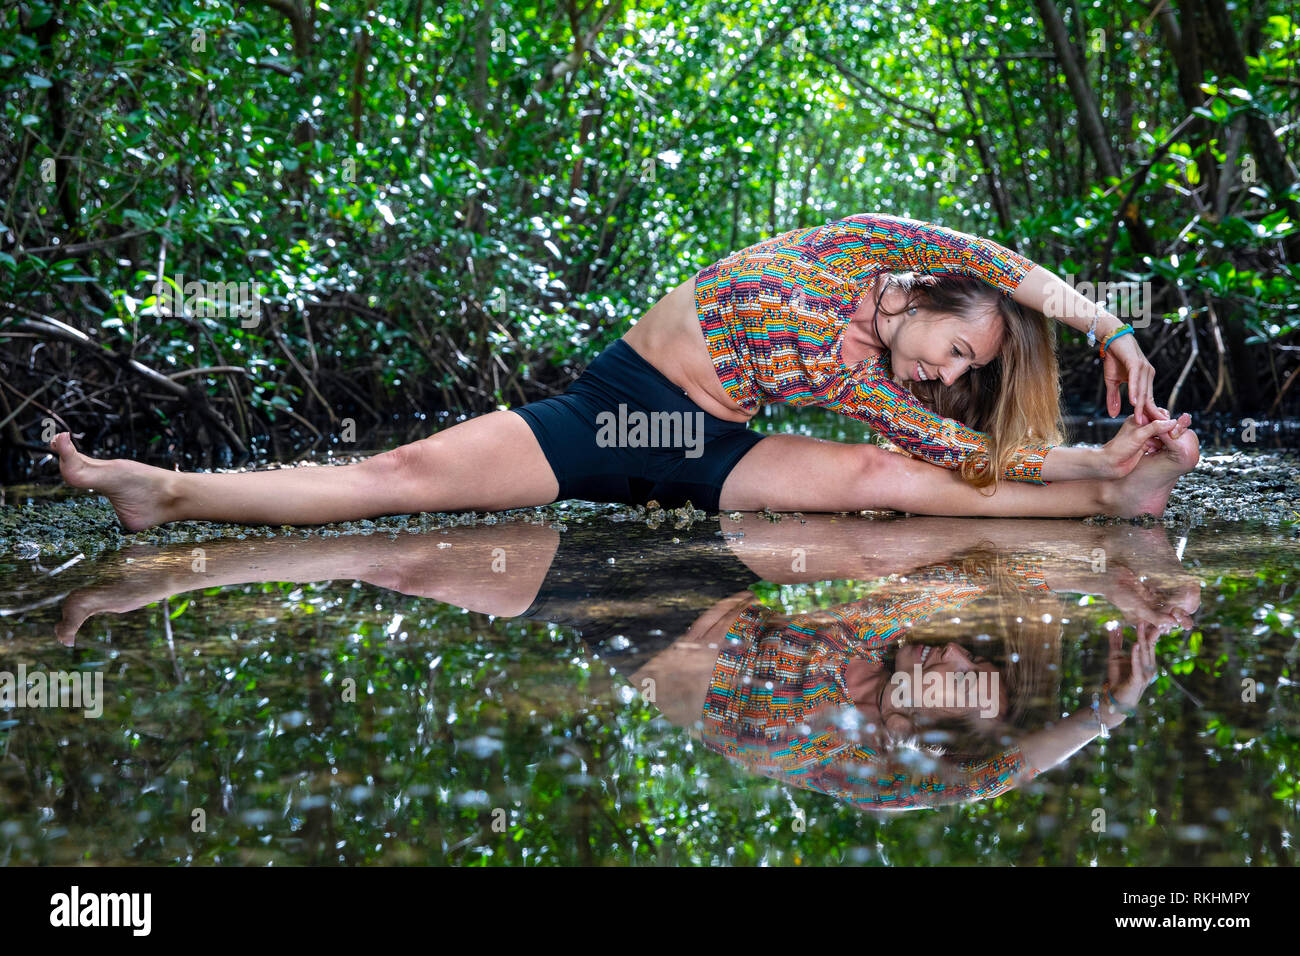 Junge Frau mit Yoga (stelzrad Split) in einer natürlichen Umgebung - Fort Lauderdale, Florida, USA Stockfoto